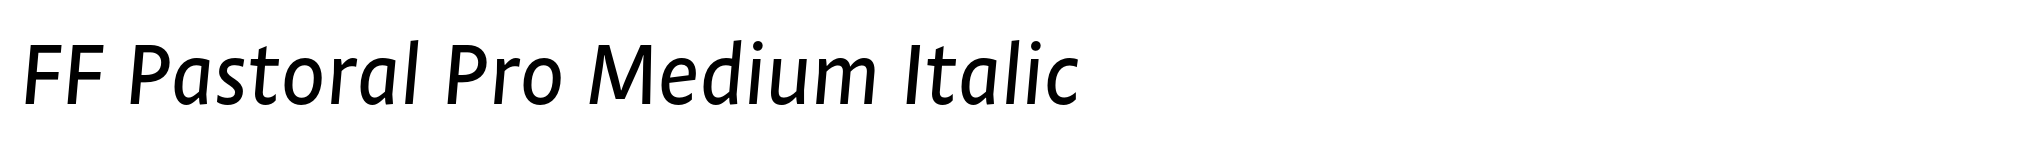 FF Pastoral Pro Medium Italic image